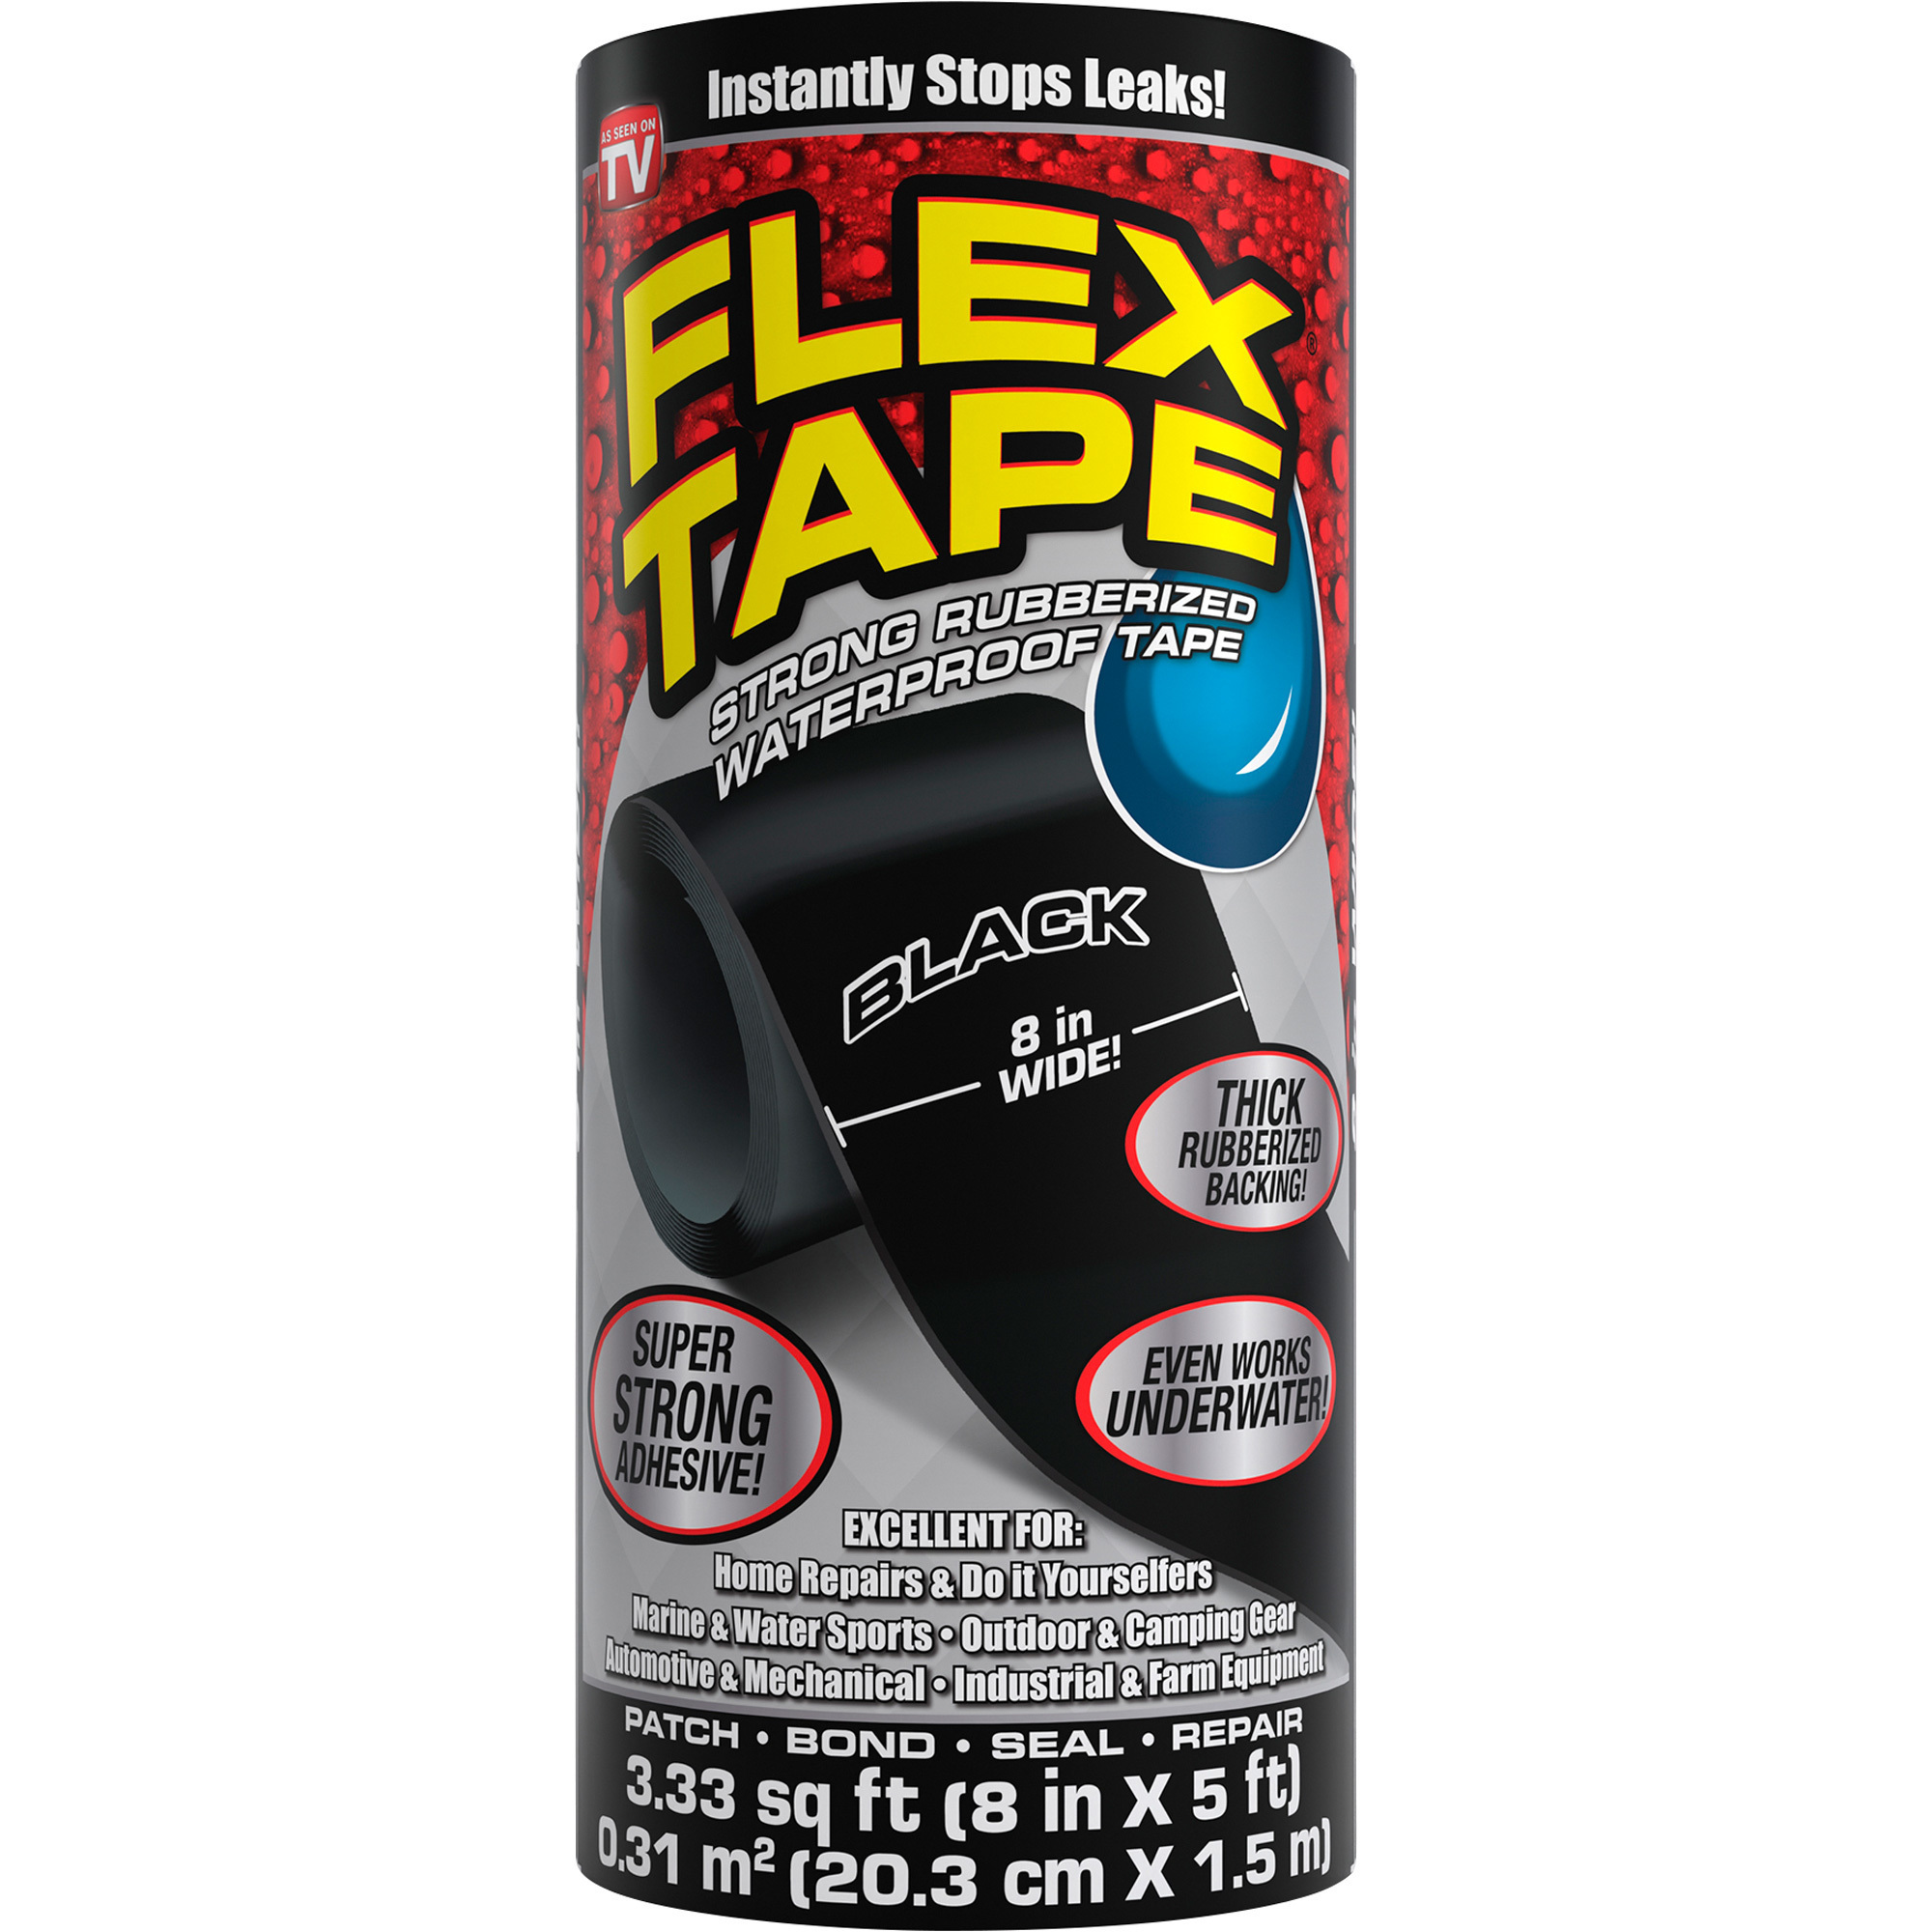 Flex Tape Rubberized Waterproof Tape â 8Inch W x 5ft.L Roll, Black, Model TFSBLKR0805